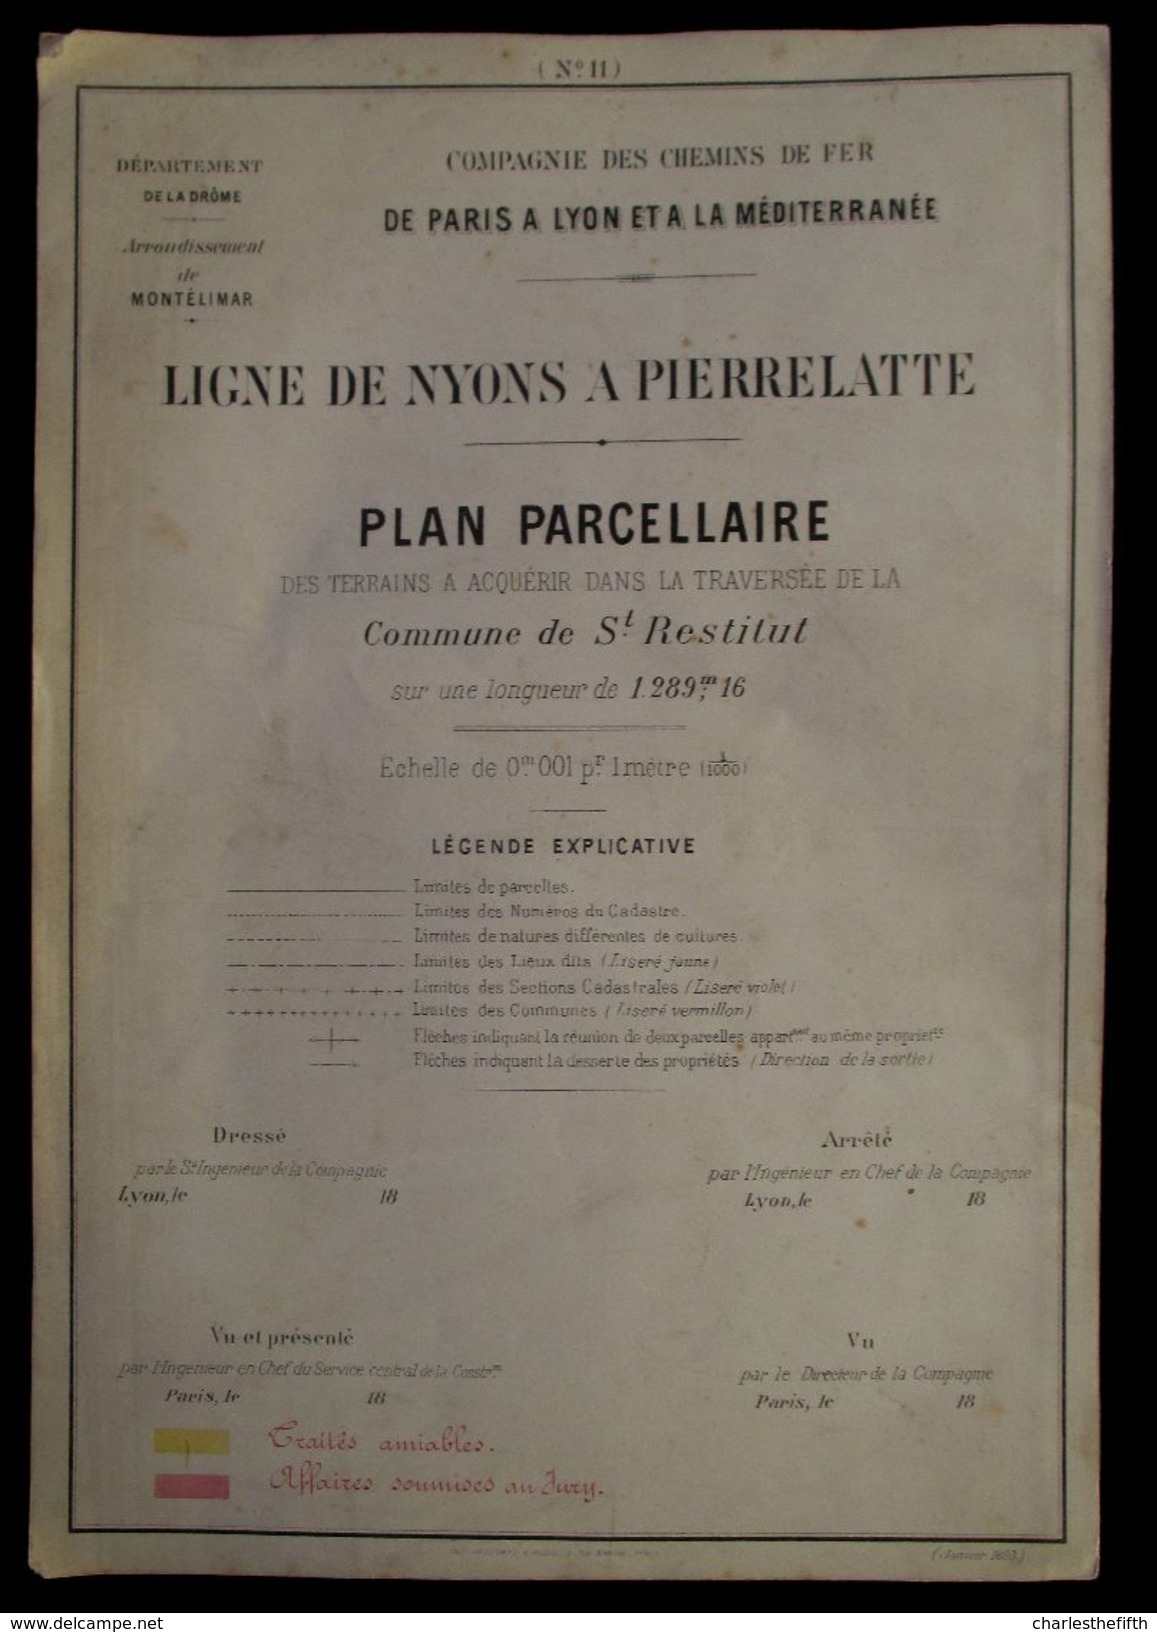 1897 PLAN PARCELLAIRE  CHEMIN DE FER > PARIS A LYON > MEDITERRANEE  COMMUNE DE St - RESTITUT ( St - Paul 3 Chateaux ) - Historical Documents